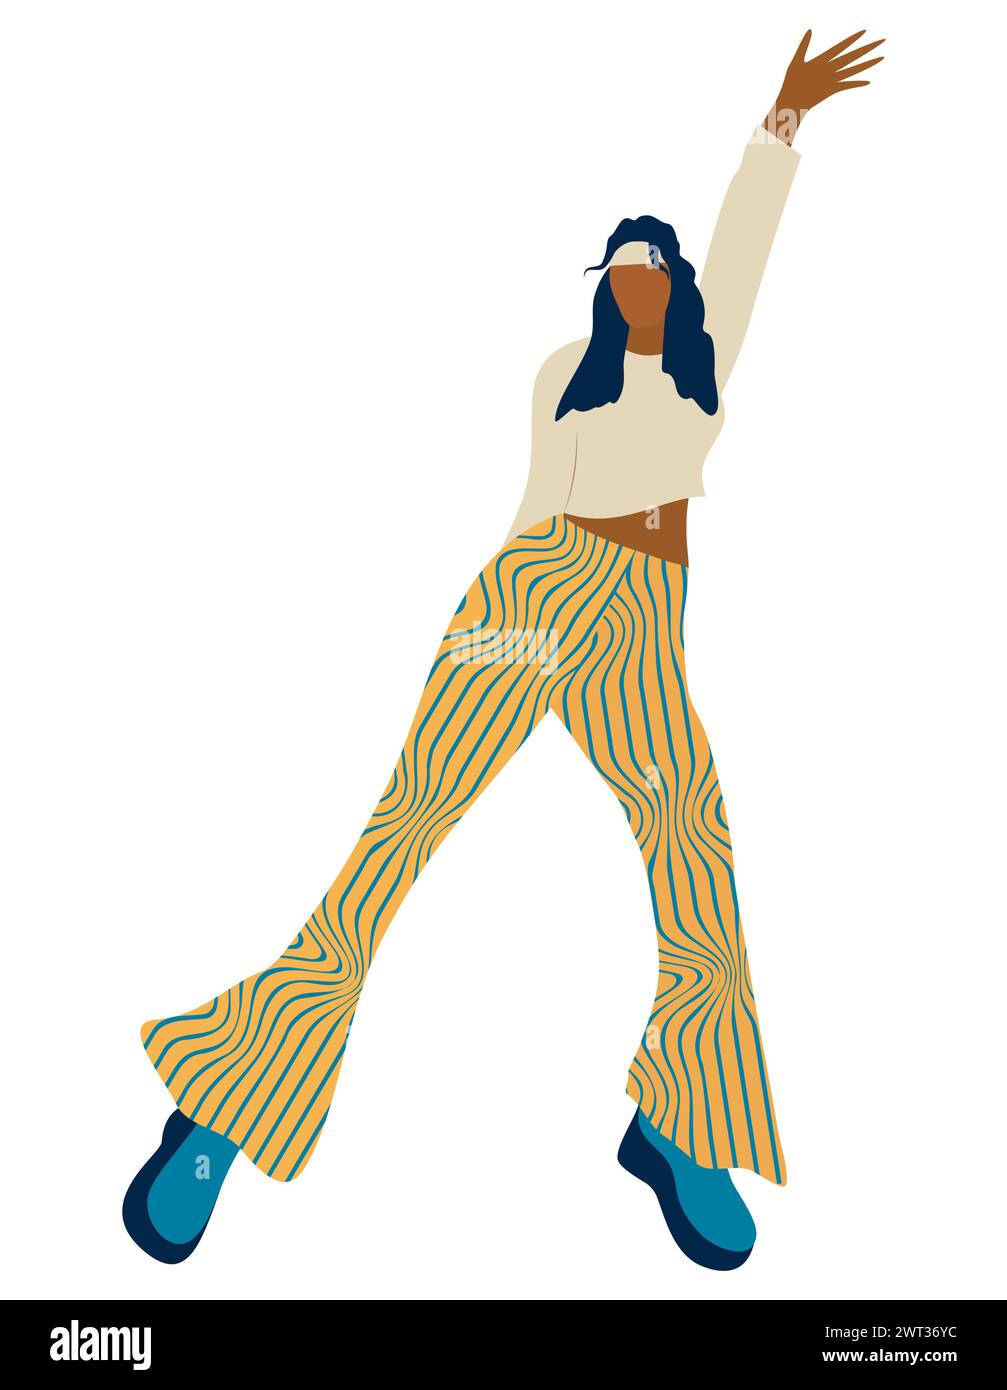 Giovane donna che balla in stile anni '70 illustrazione vettoriale isolata su sfondo bianco Illustrazione Vettoriale